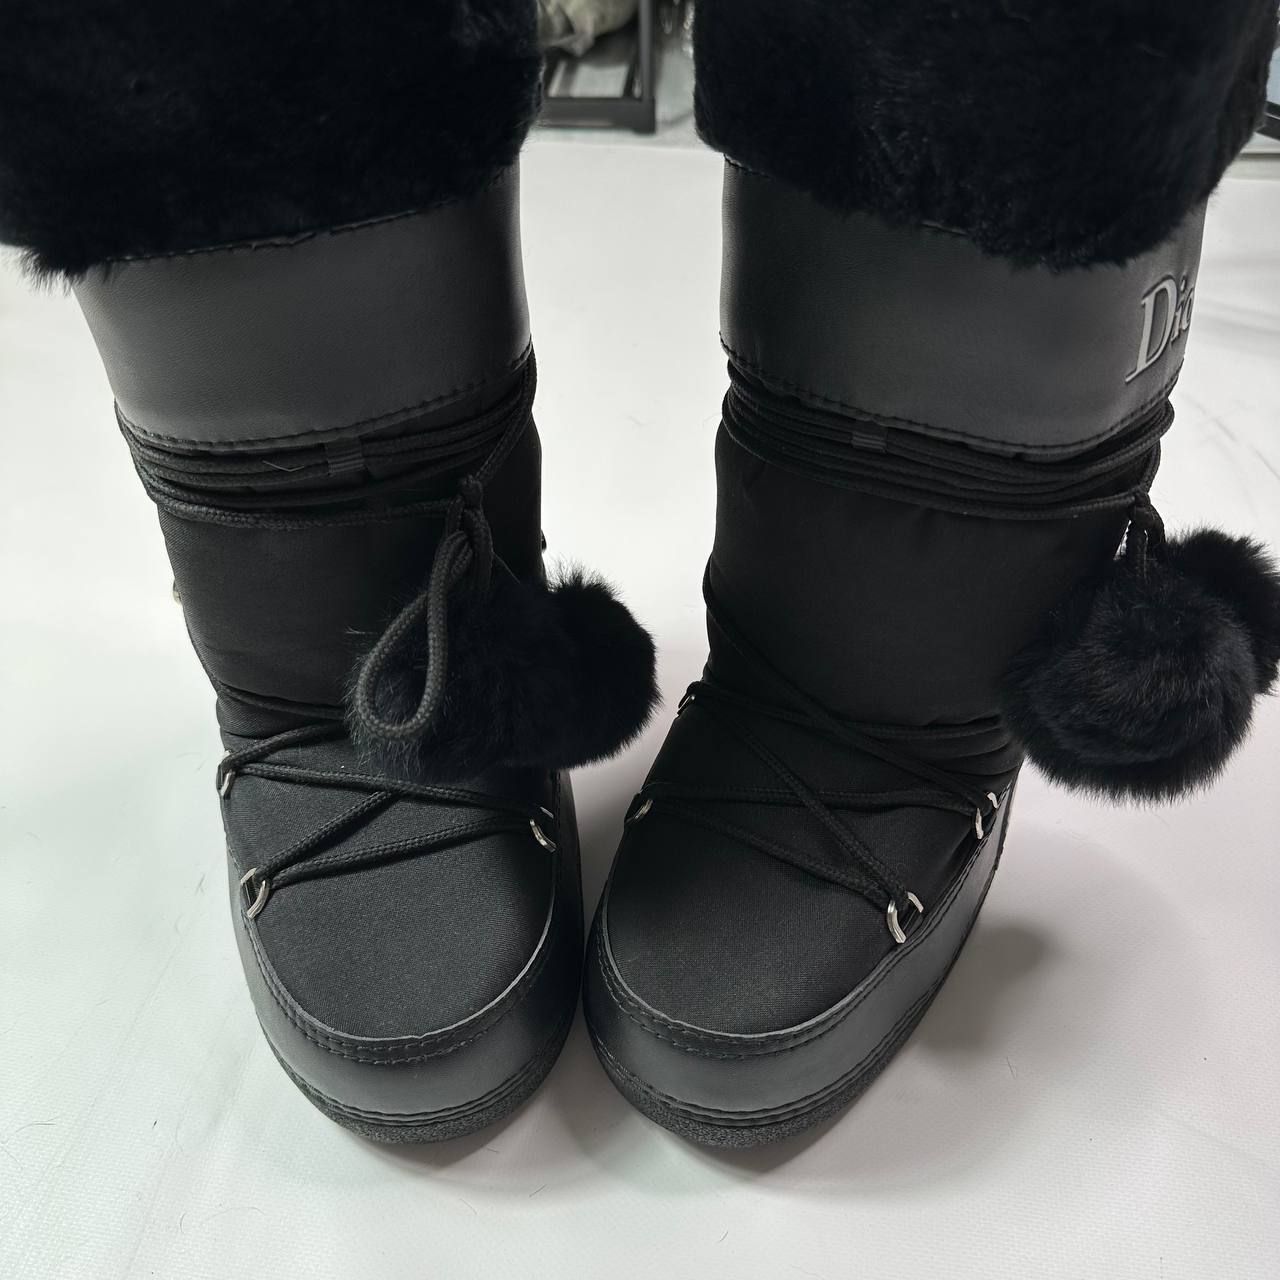 Dior Galliano Vintage Snow Moon Boots